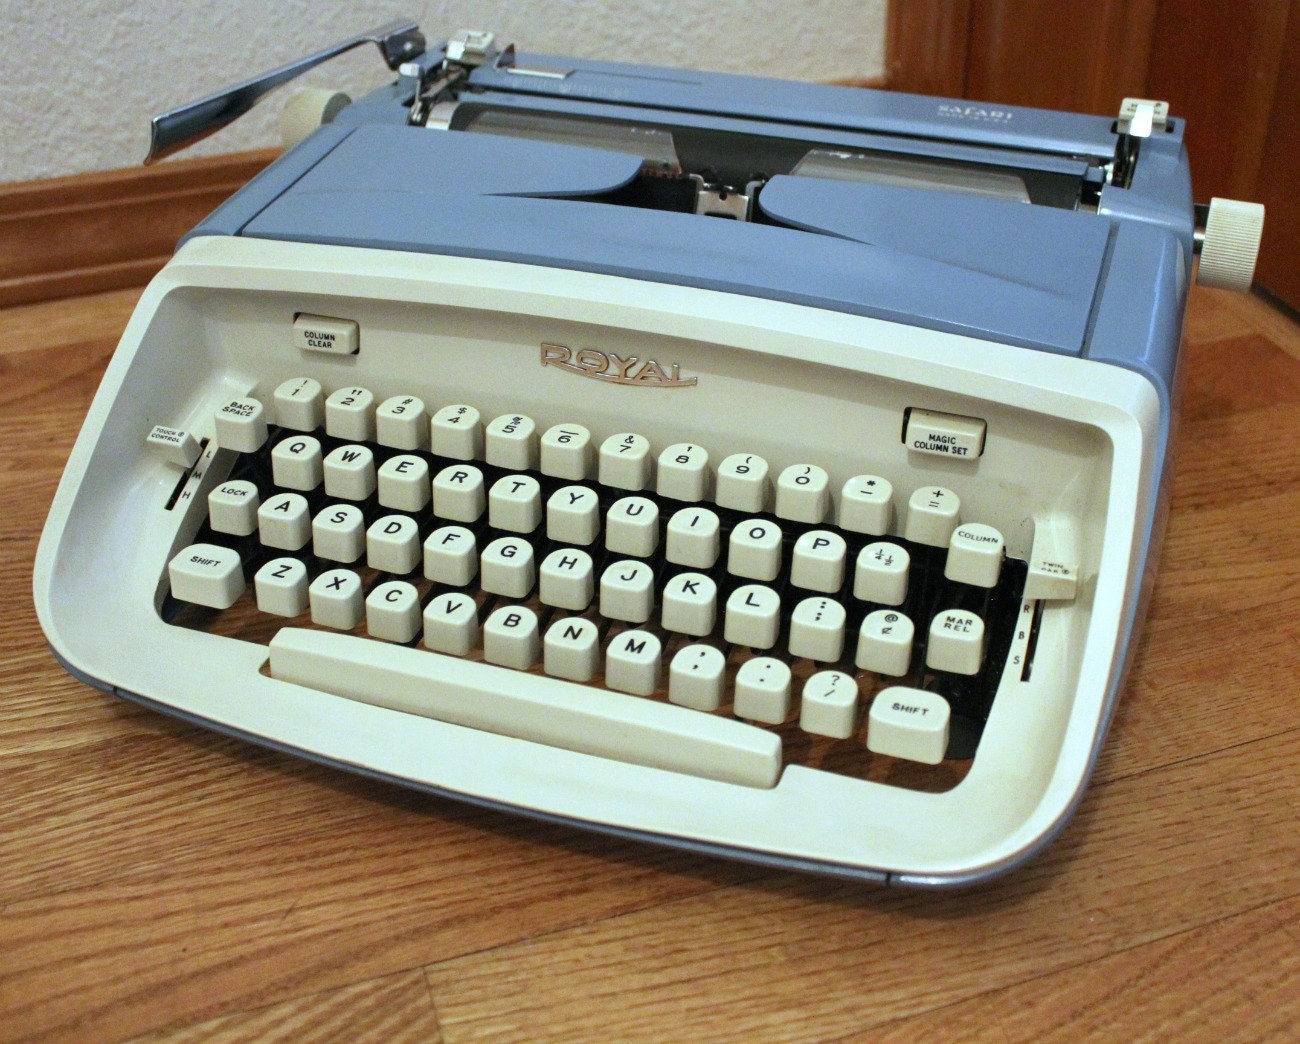 royal safari typewriter